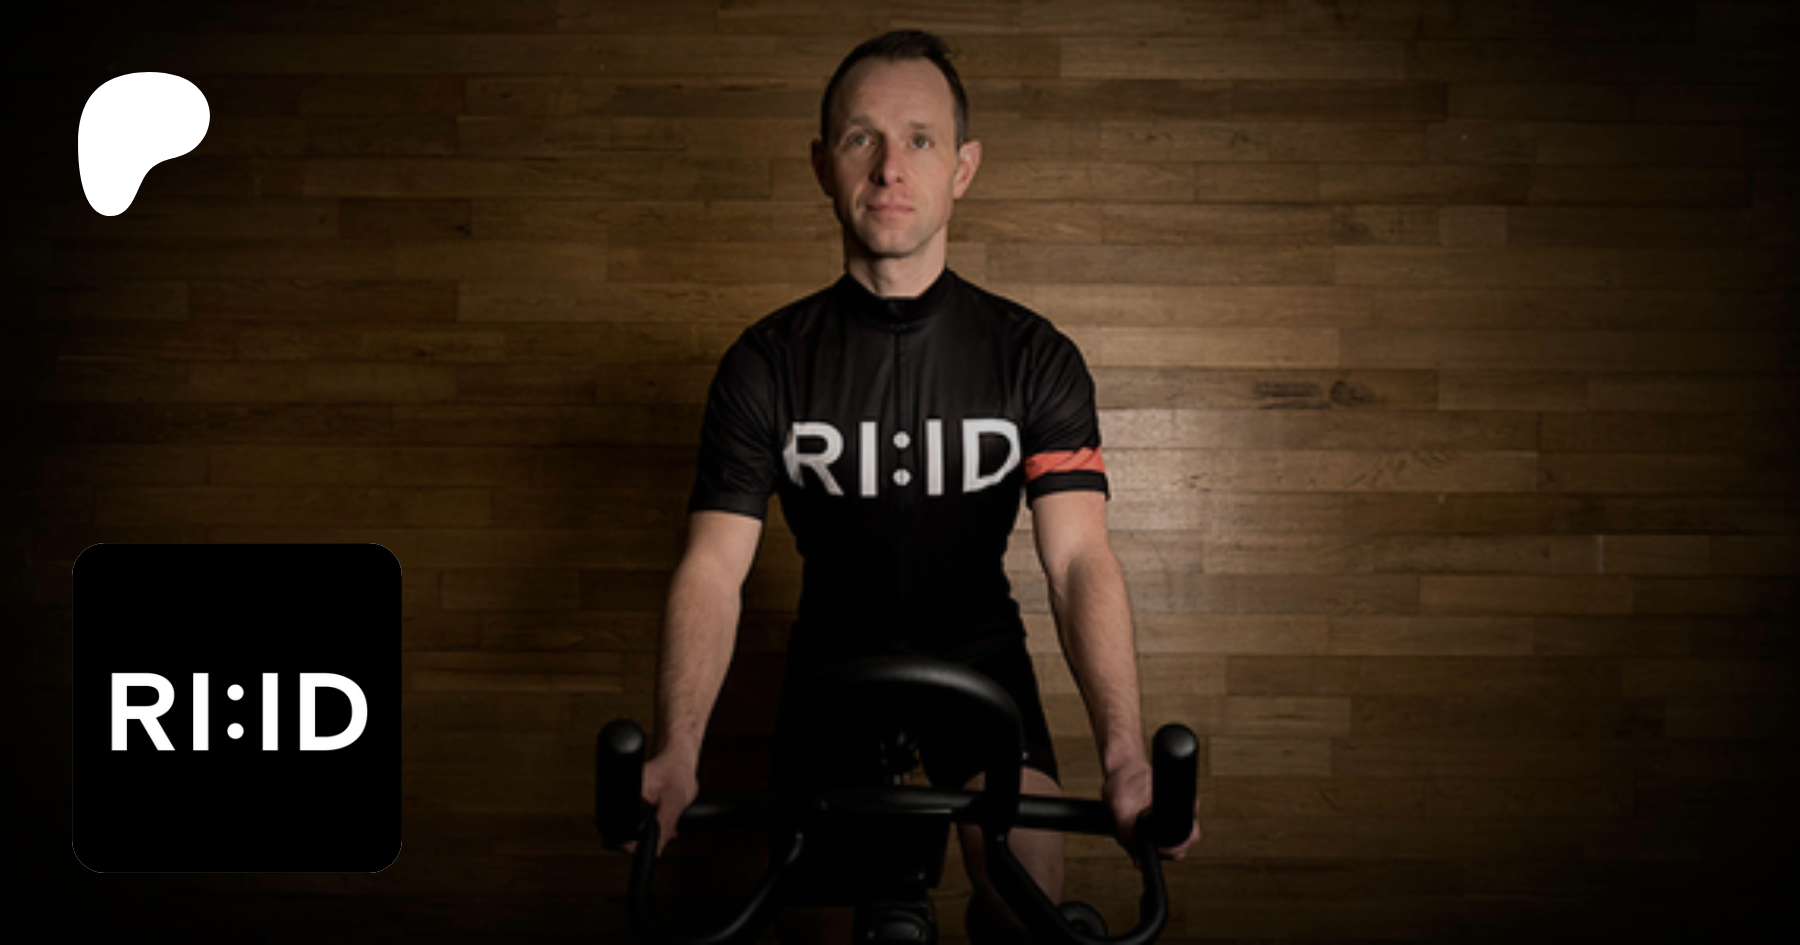 RI:ID, creating Indoor Cycling Videos